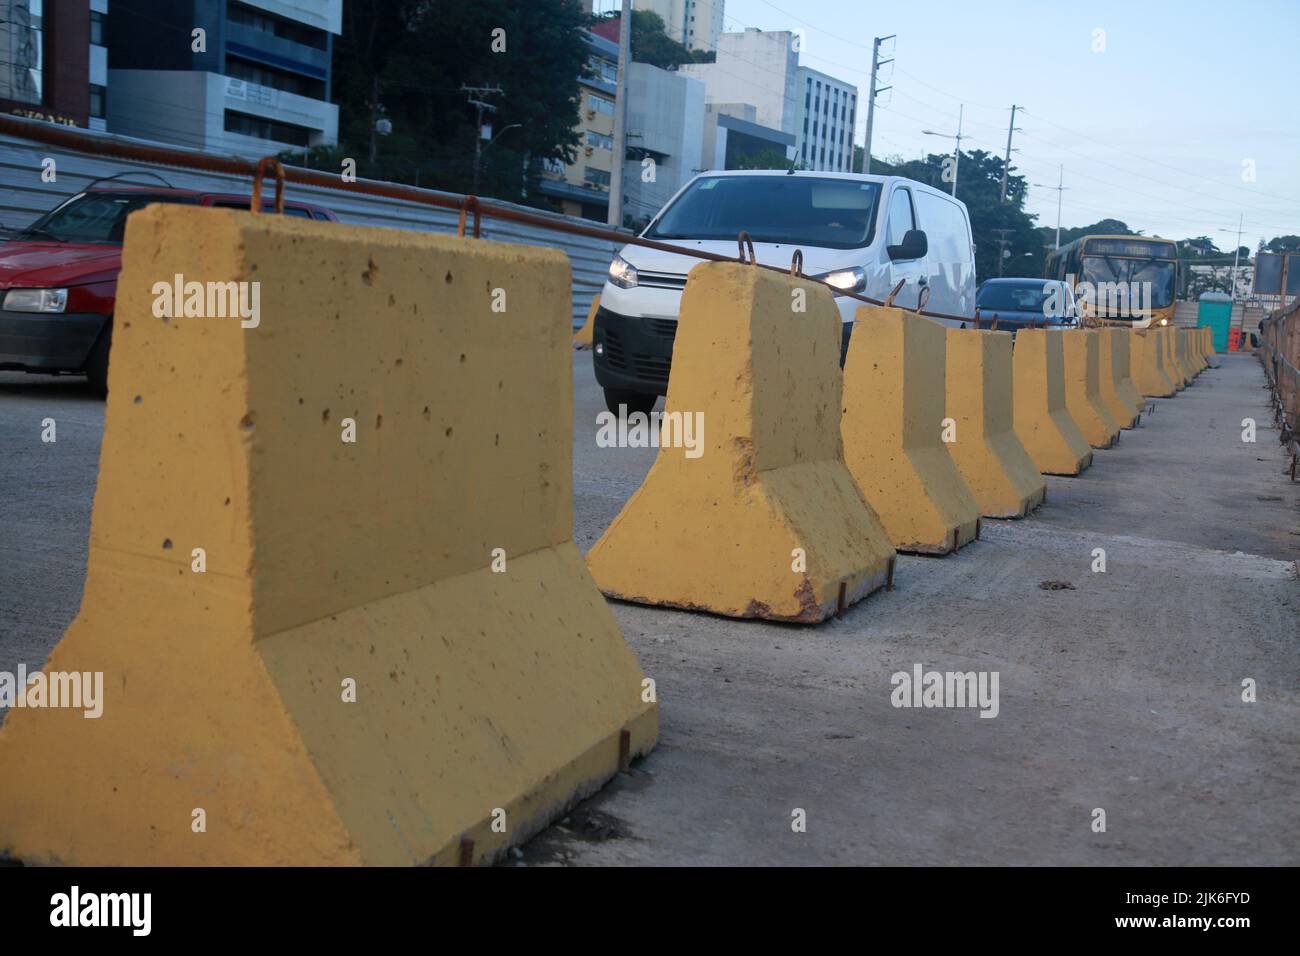 salvador, bahia, brésil - 29 juillet 2022 : barrière en béton pour contenir des véhicules sur le site de construction de la voie exclusive pour le système de transport BRT Banque D'Images